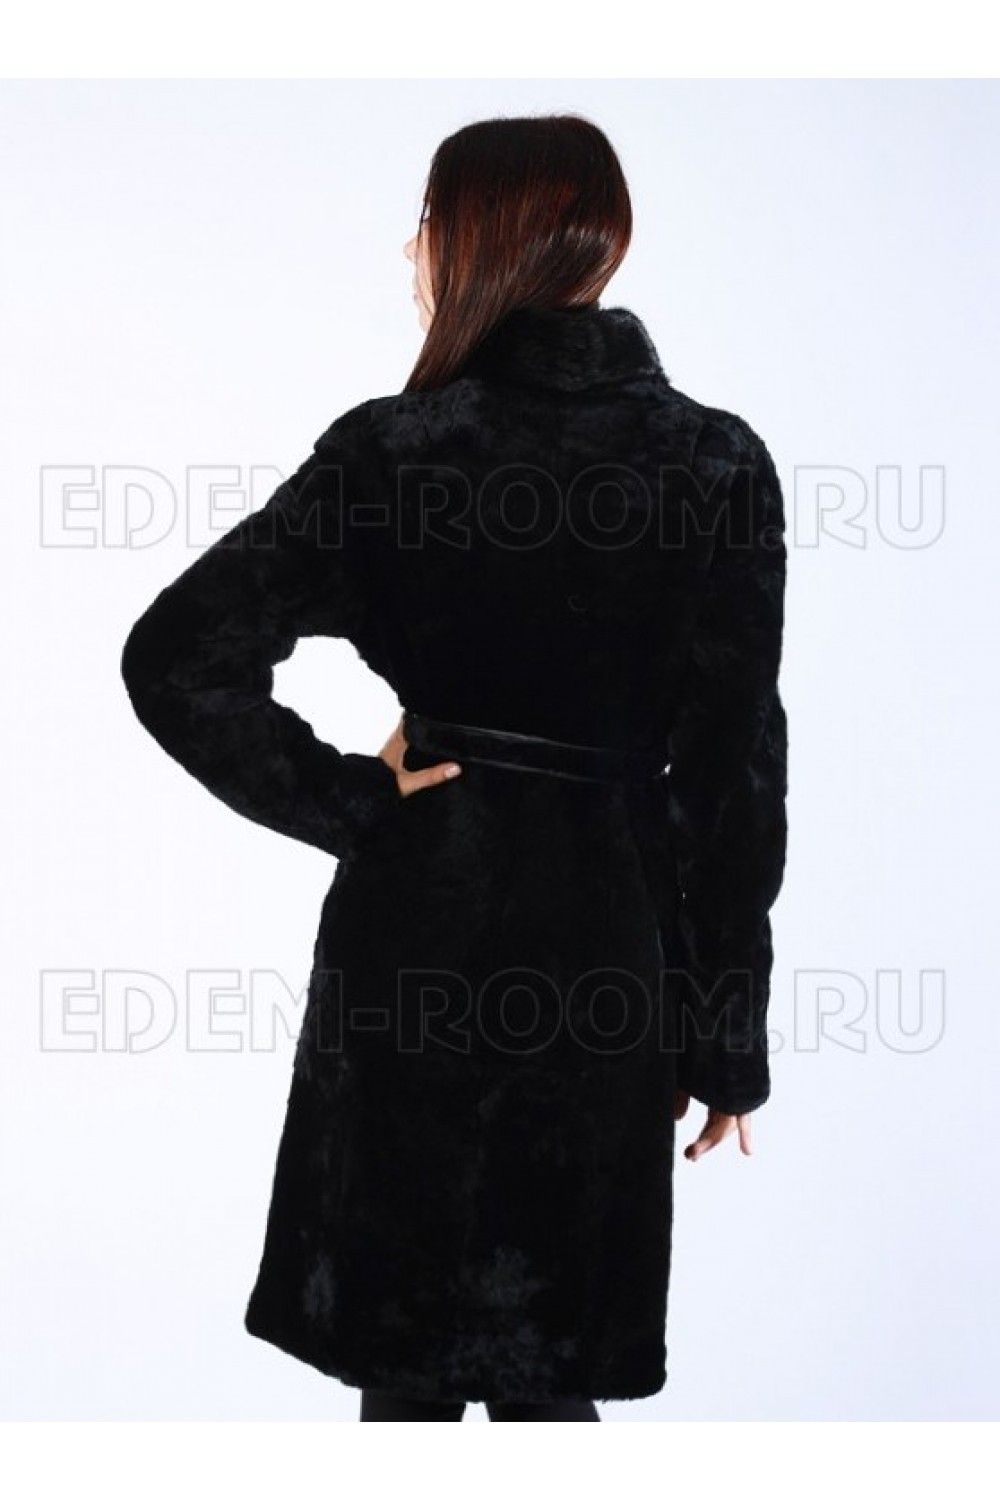 Чёрная женская шуба из мутона с поясом